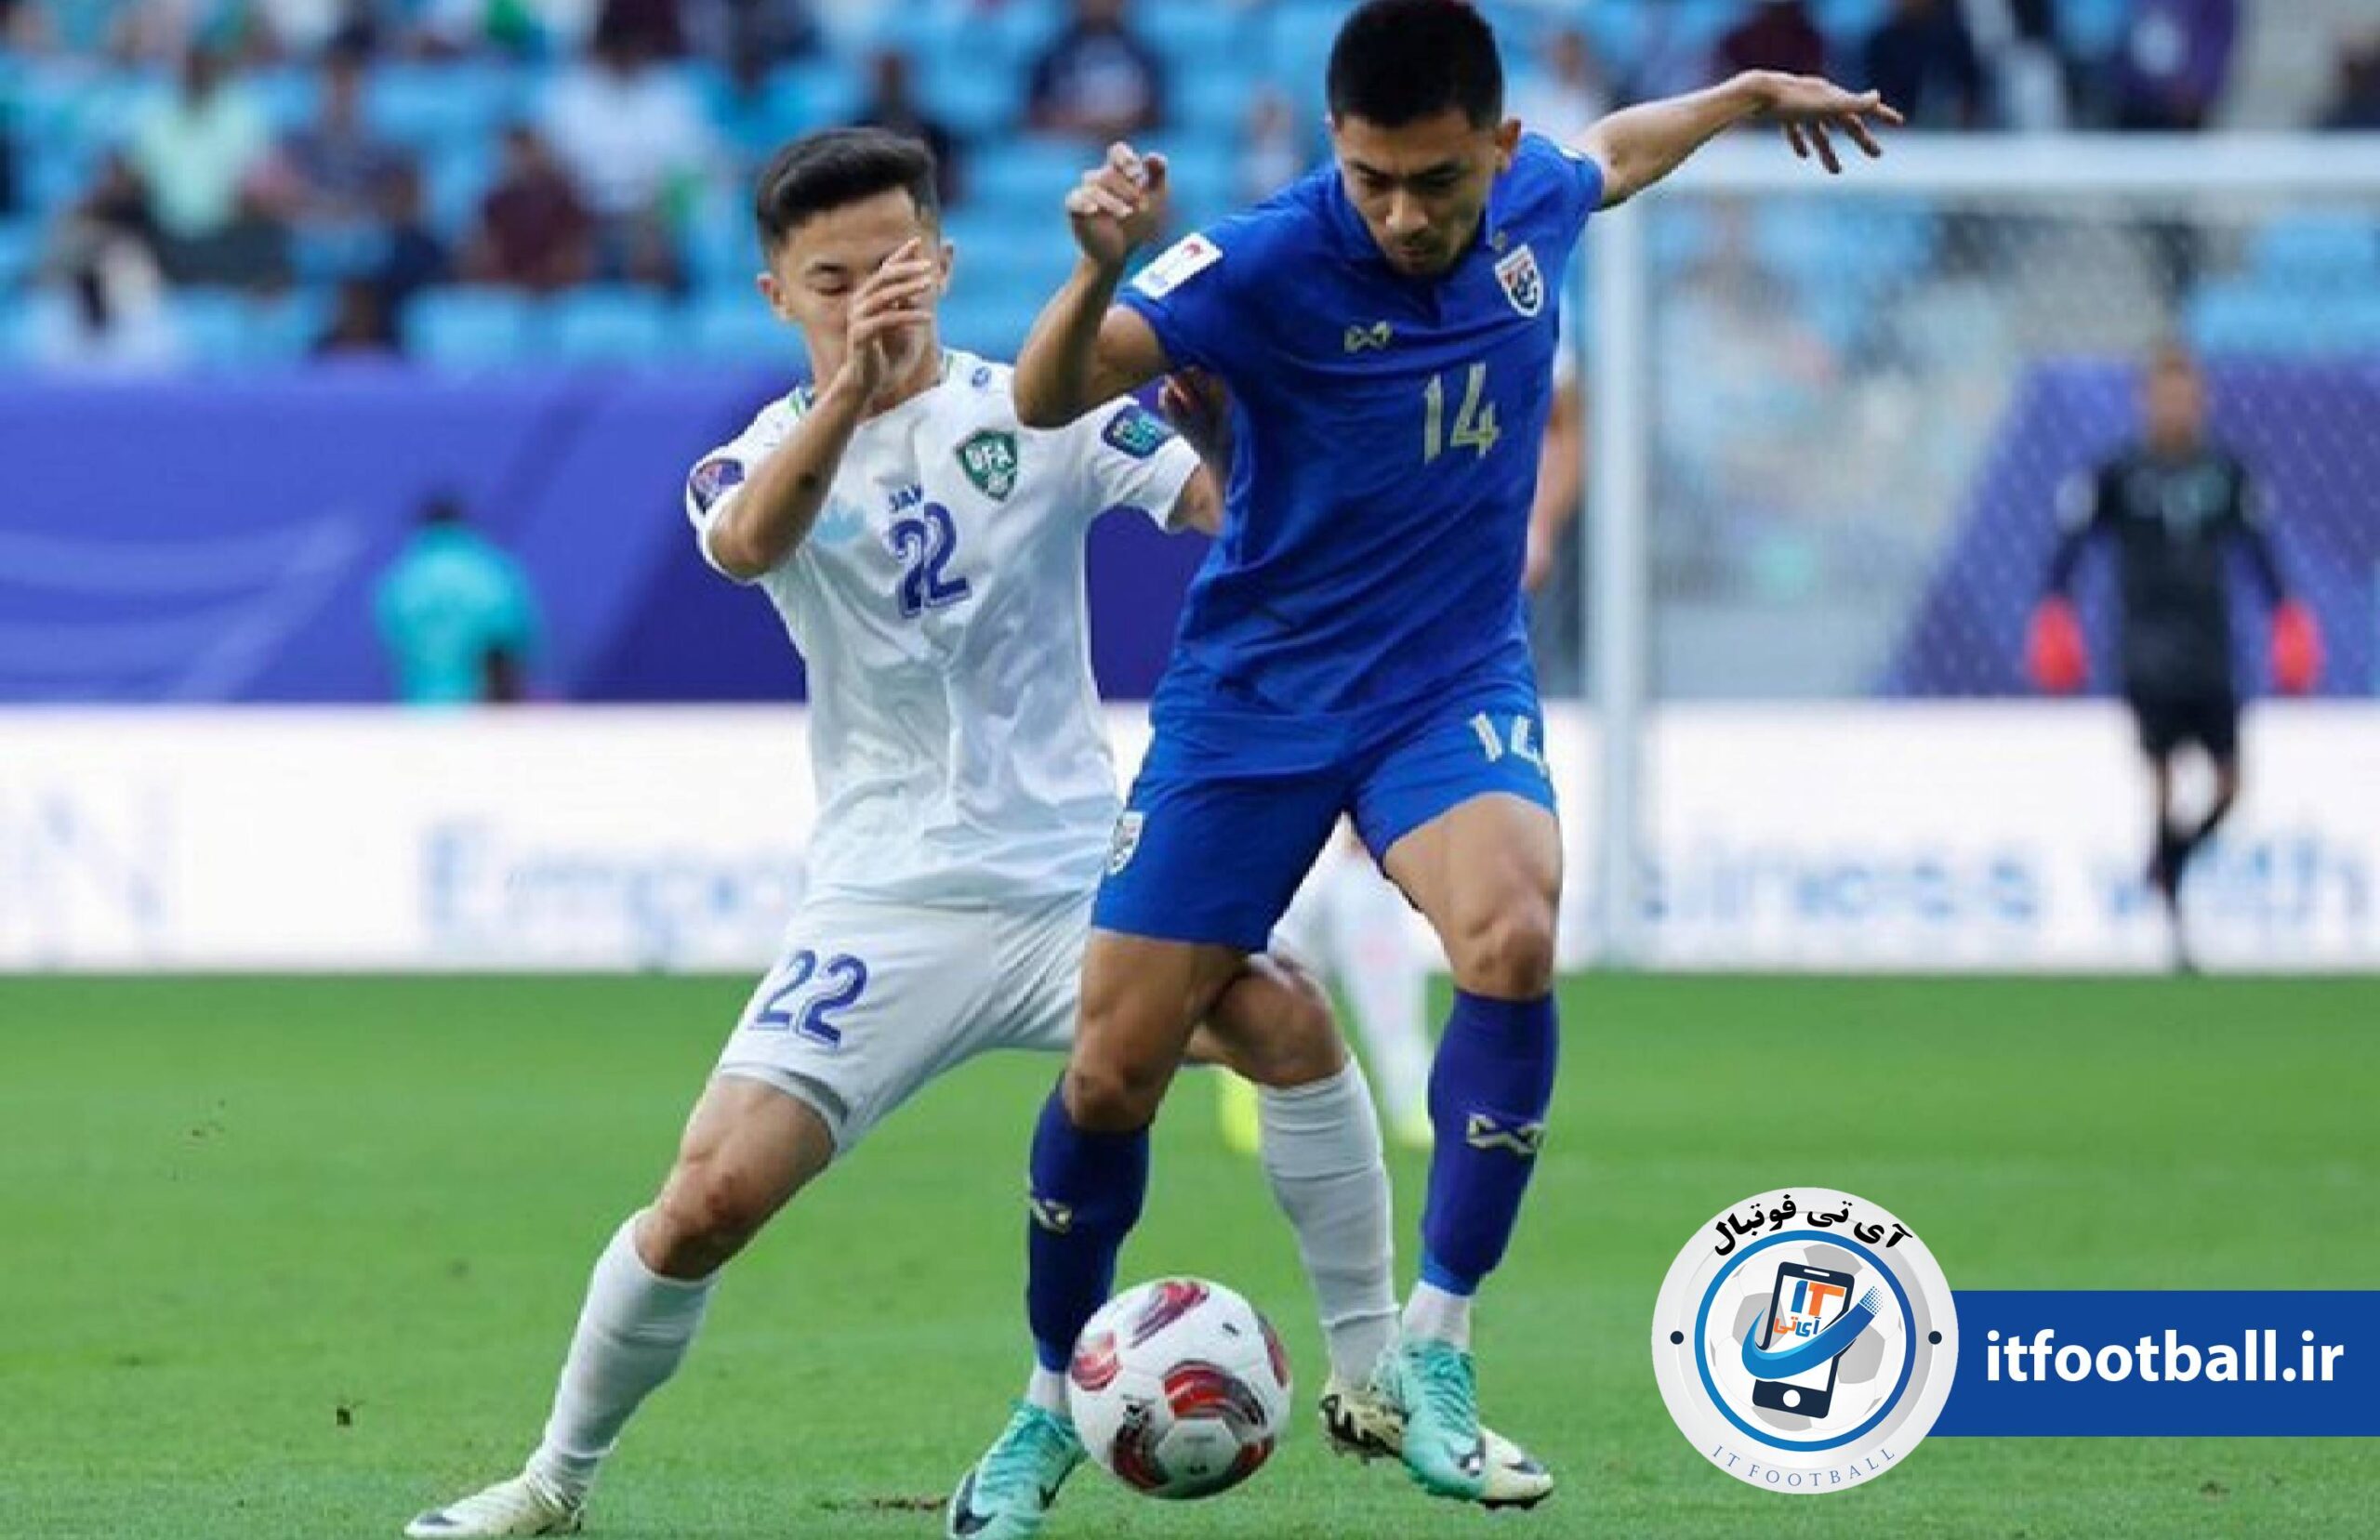 ازبکستان + تایلند
آی تی فوتبال